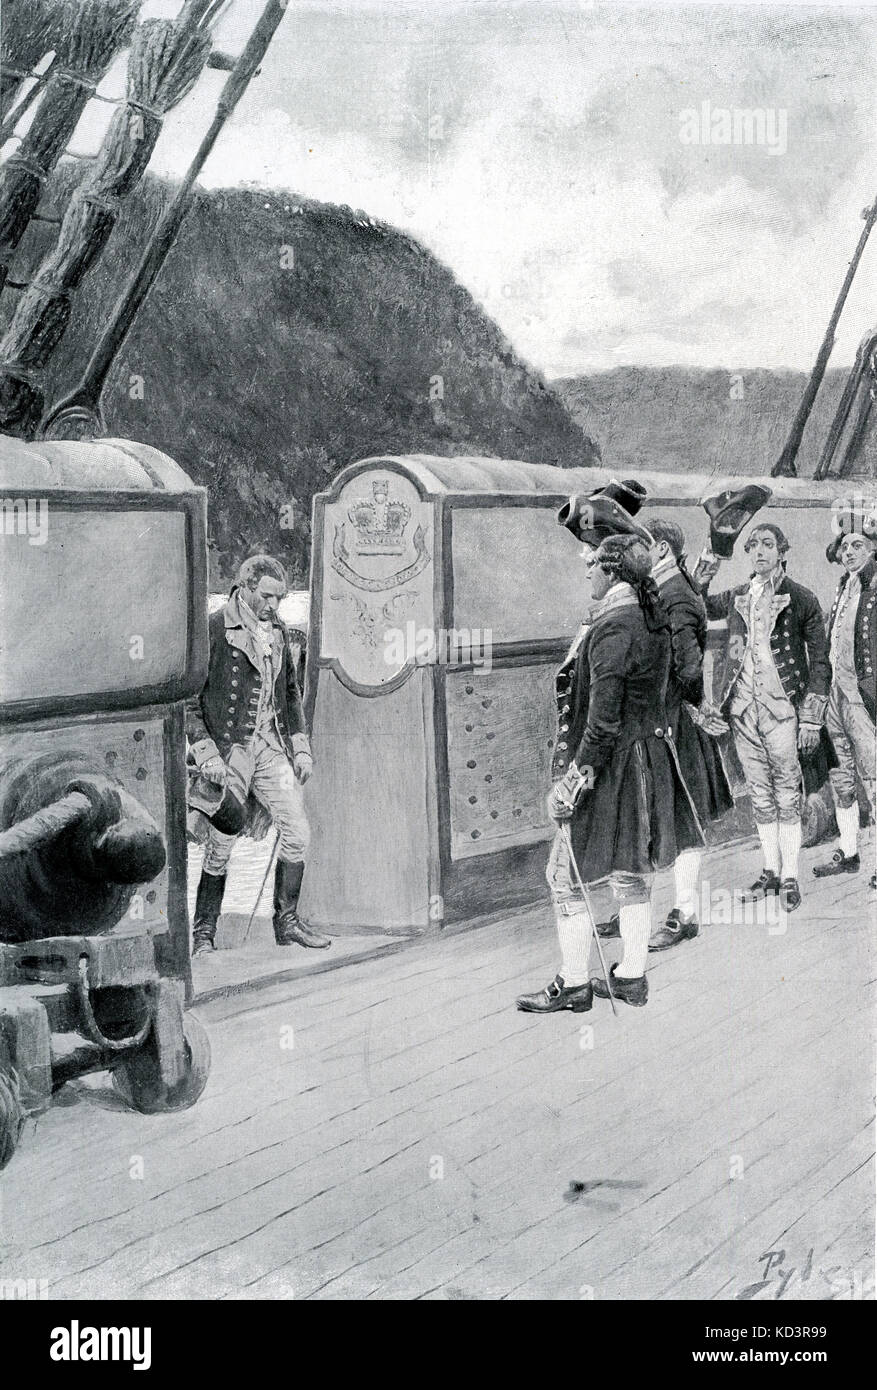 Die Flucht des amerikanischen Revolutionären General Benedict Arnold (1741 - 1801) auf das britische Schiff Vulture, um das Jahr 1780, nachdem er sich den Briten gegenüber entsetzt hatte. Amerikanische Revolution. Illustration von Howard Pyle, 1896 Stockfoto